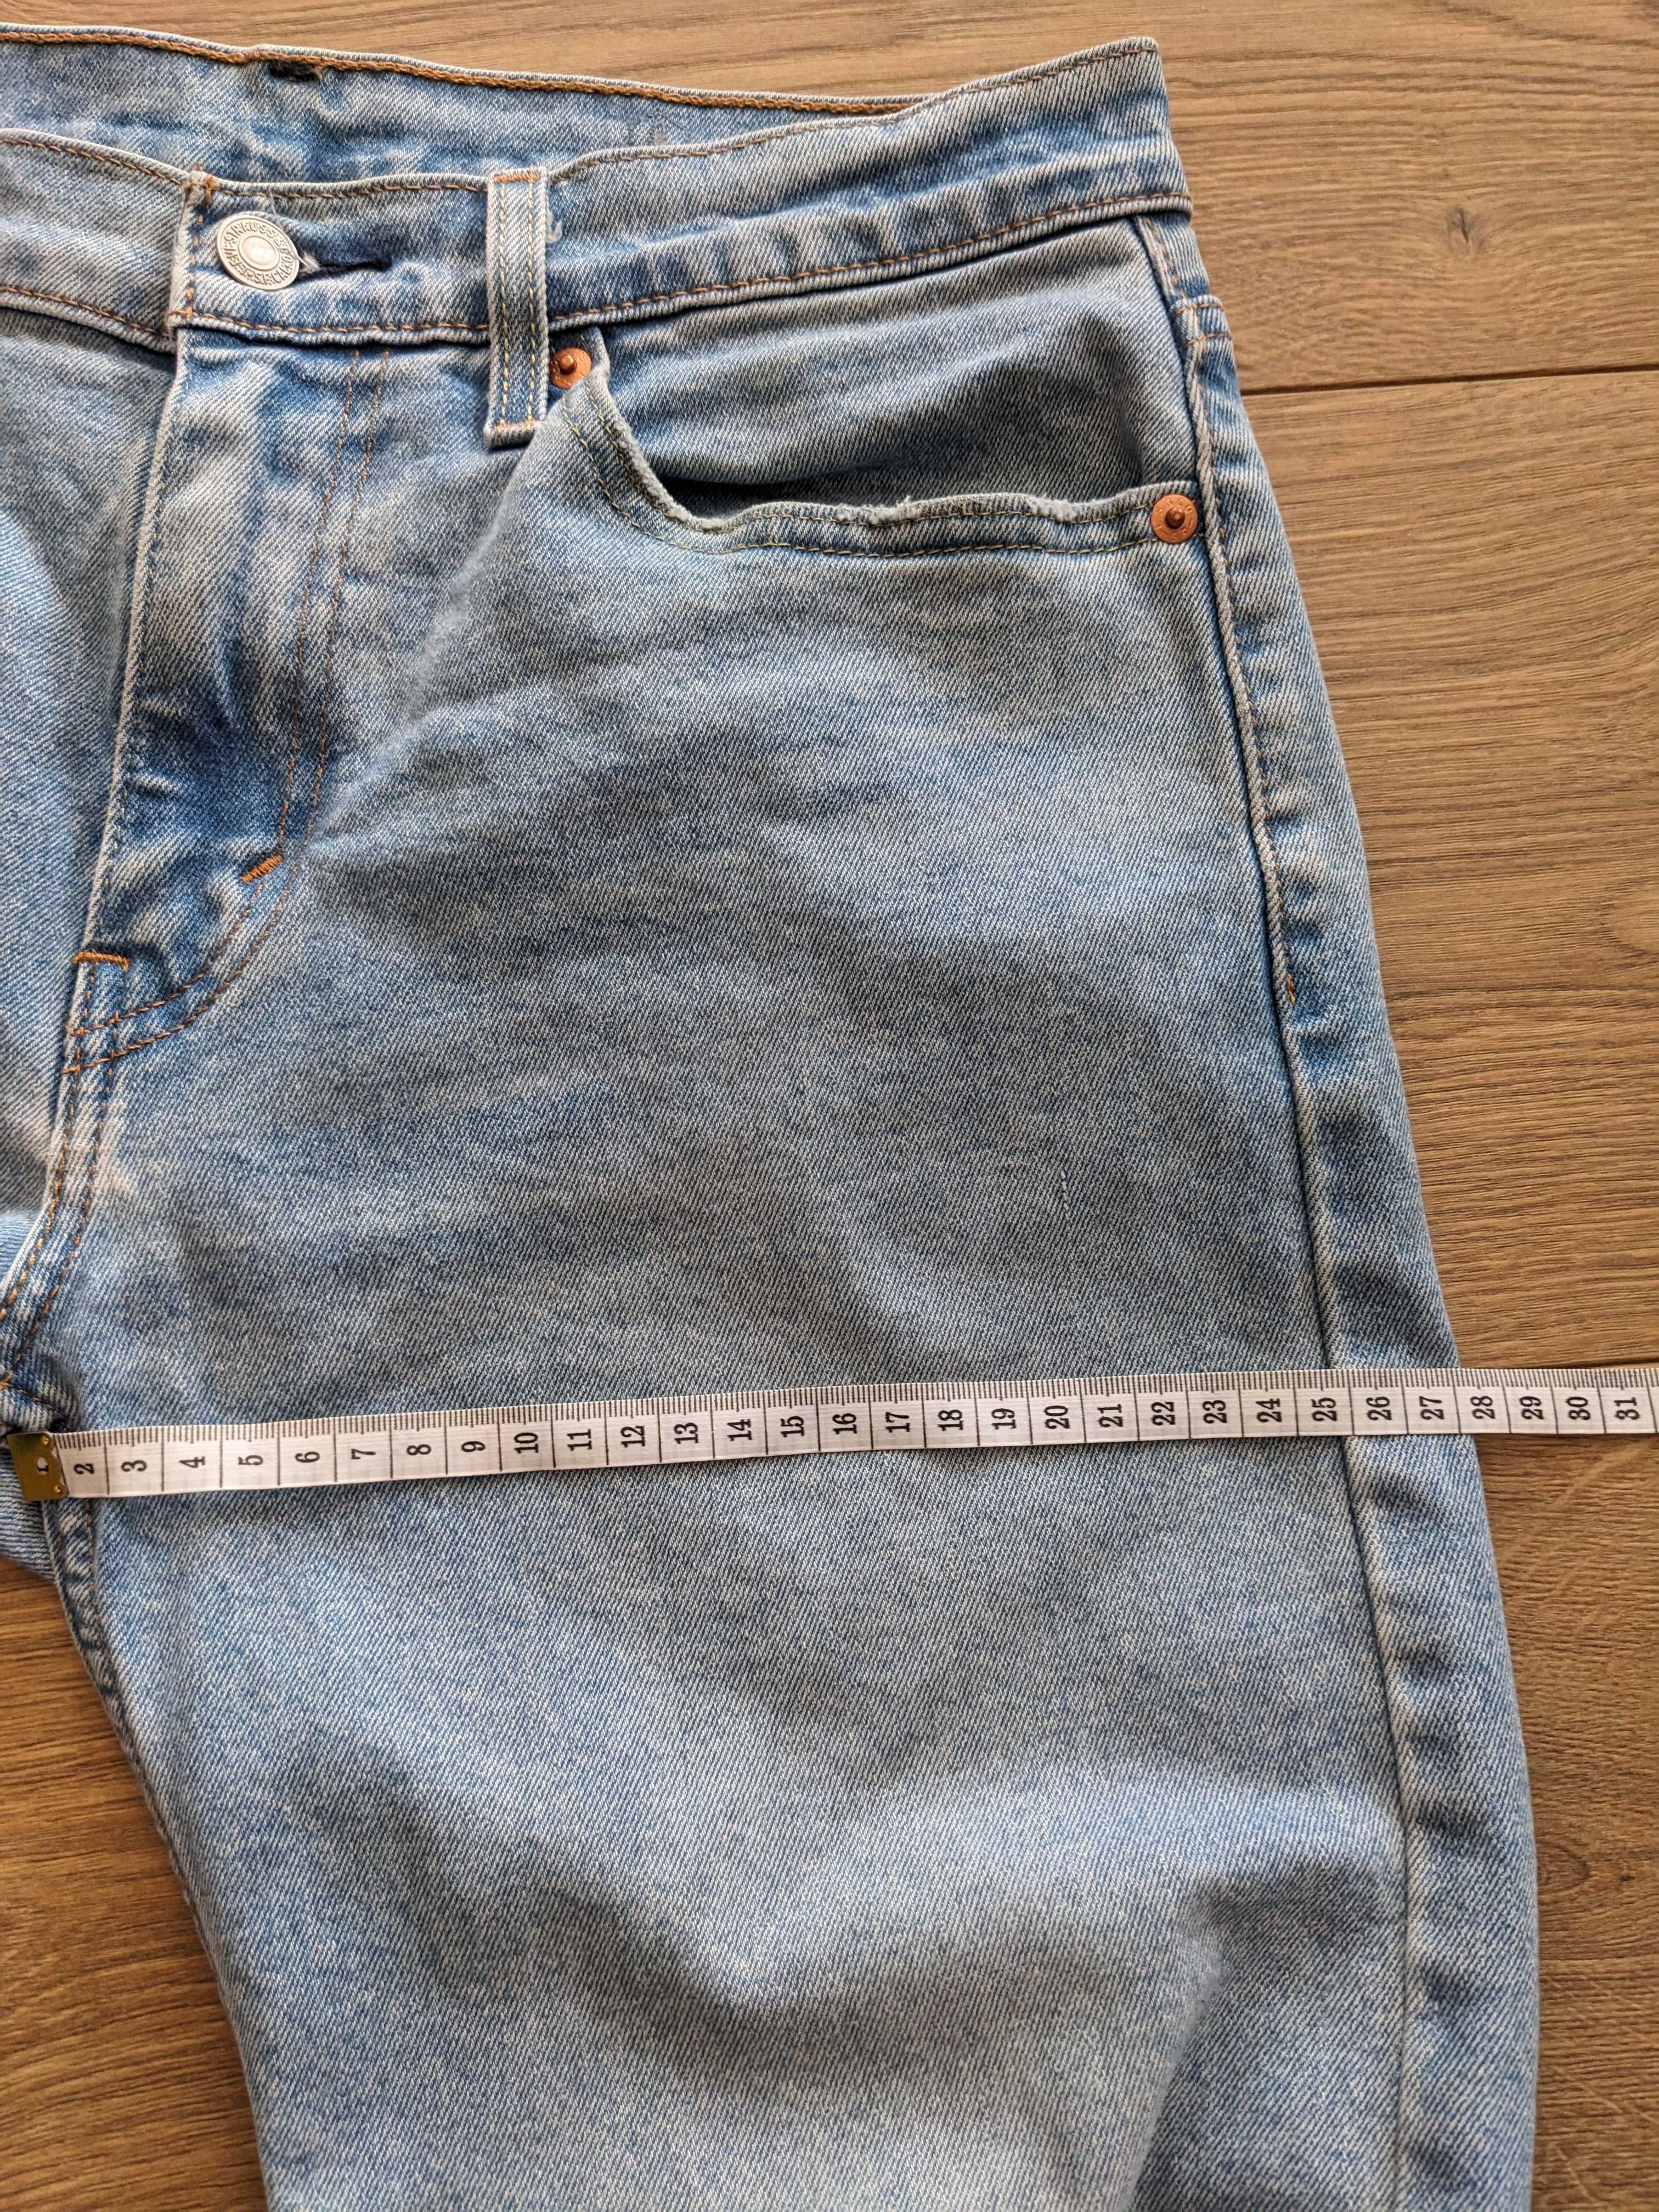 Męskie jeansy Levis 512 niebieskie spodnie W30 L34